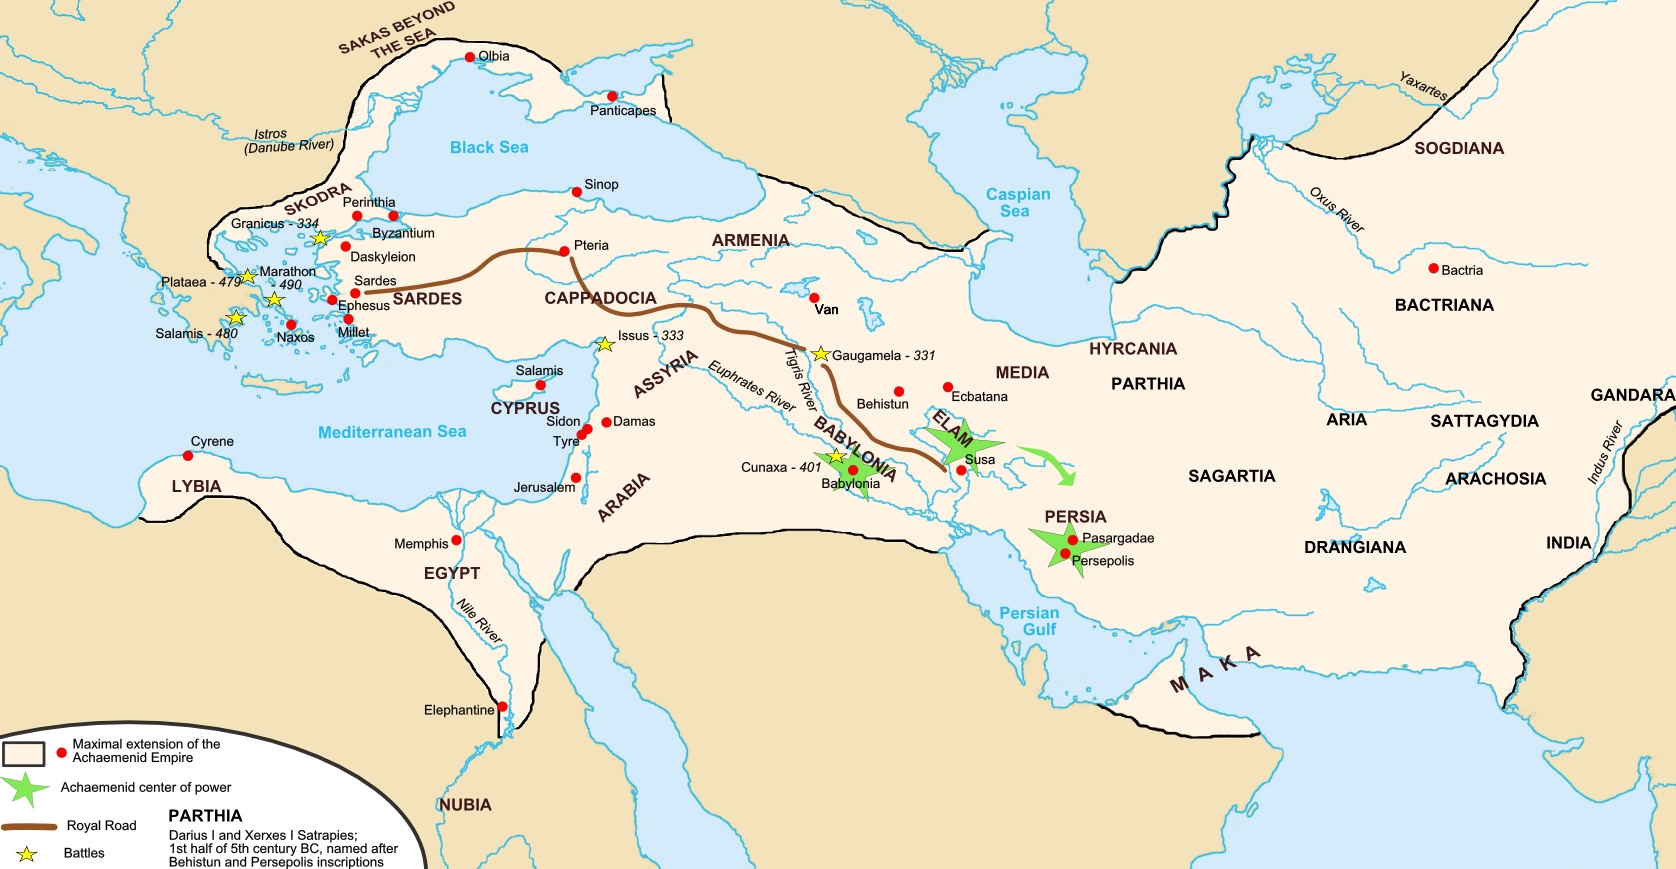 上图：波斯帝国的御道（Royal Road）是一条古代大道，从首都书珊城一直到撒狄，最初可能由亚述修建，波斯大流士一世改进，一直沿用到罗马时代。在御道上，波斯信差可以在7天内走2700公里。古希腊史学家希罗多德说：「这个世界上再没有什么东西比这些波斯信差还要走得快了。」希罗多德赞扬这些信使的话：「不管雨或雪、炎热或黑夜，都不能使这些传讯者停止完成他们的使命/Neither snow nor rain nor heat nor gloom of night stays these couriers from the swift completion of their appointed rounds」，现在已经成为了激励邮递员们的警句。 结合希罗多德的著作、考古研究和其他的历史文献，波斯御道的路线是从撒狄的西边出发，向东穿过土耳其的中北部，直到尼尼微，再折向南方到达巴比伦，然而分成两条路线：第一条向东北经过亚马他（Ecbatana）而连上丝绸之路，另一条往东南经书珊（Susa）到达波斯波利斯（Persepolis）。